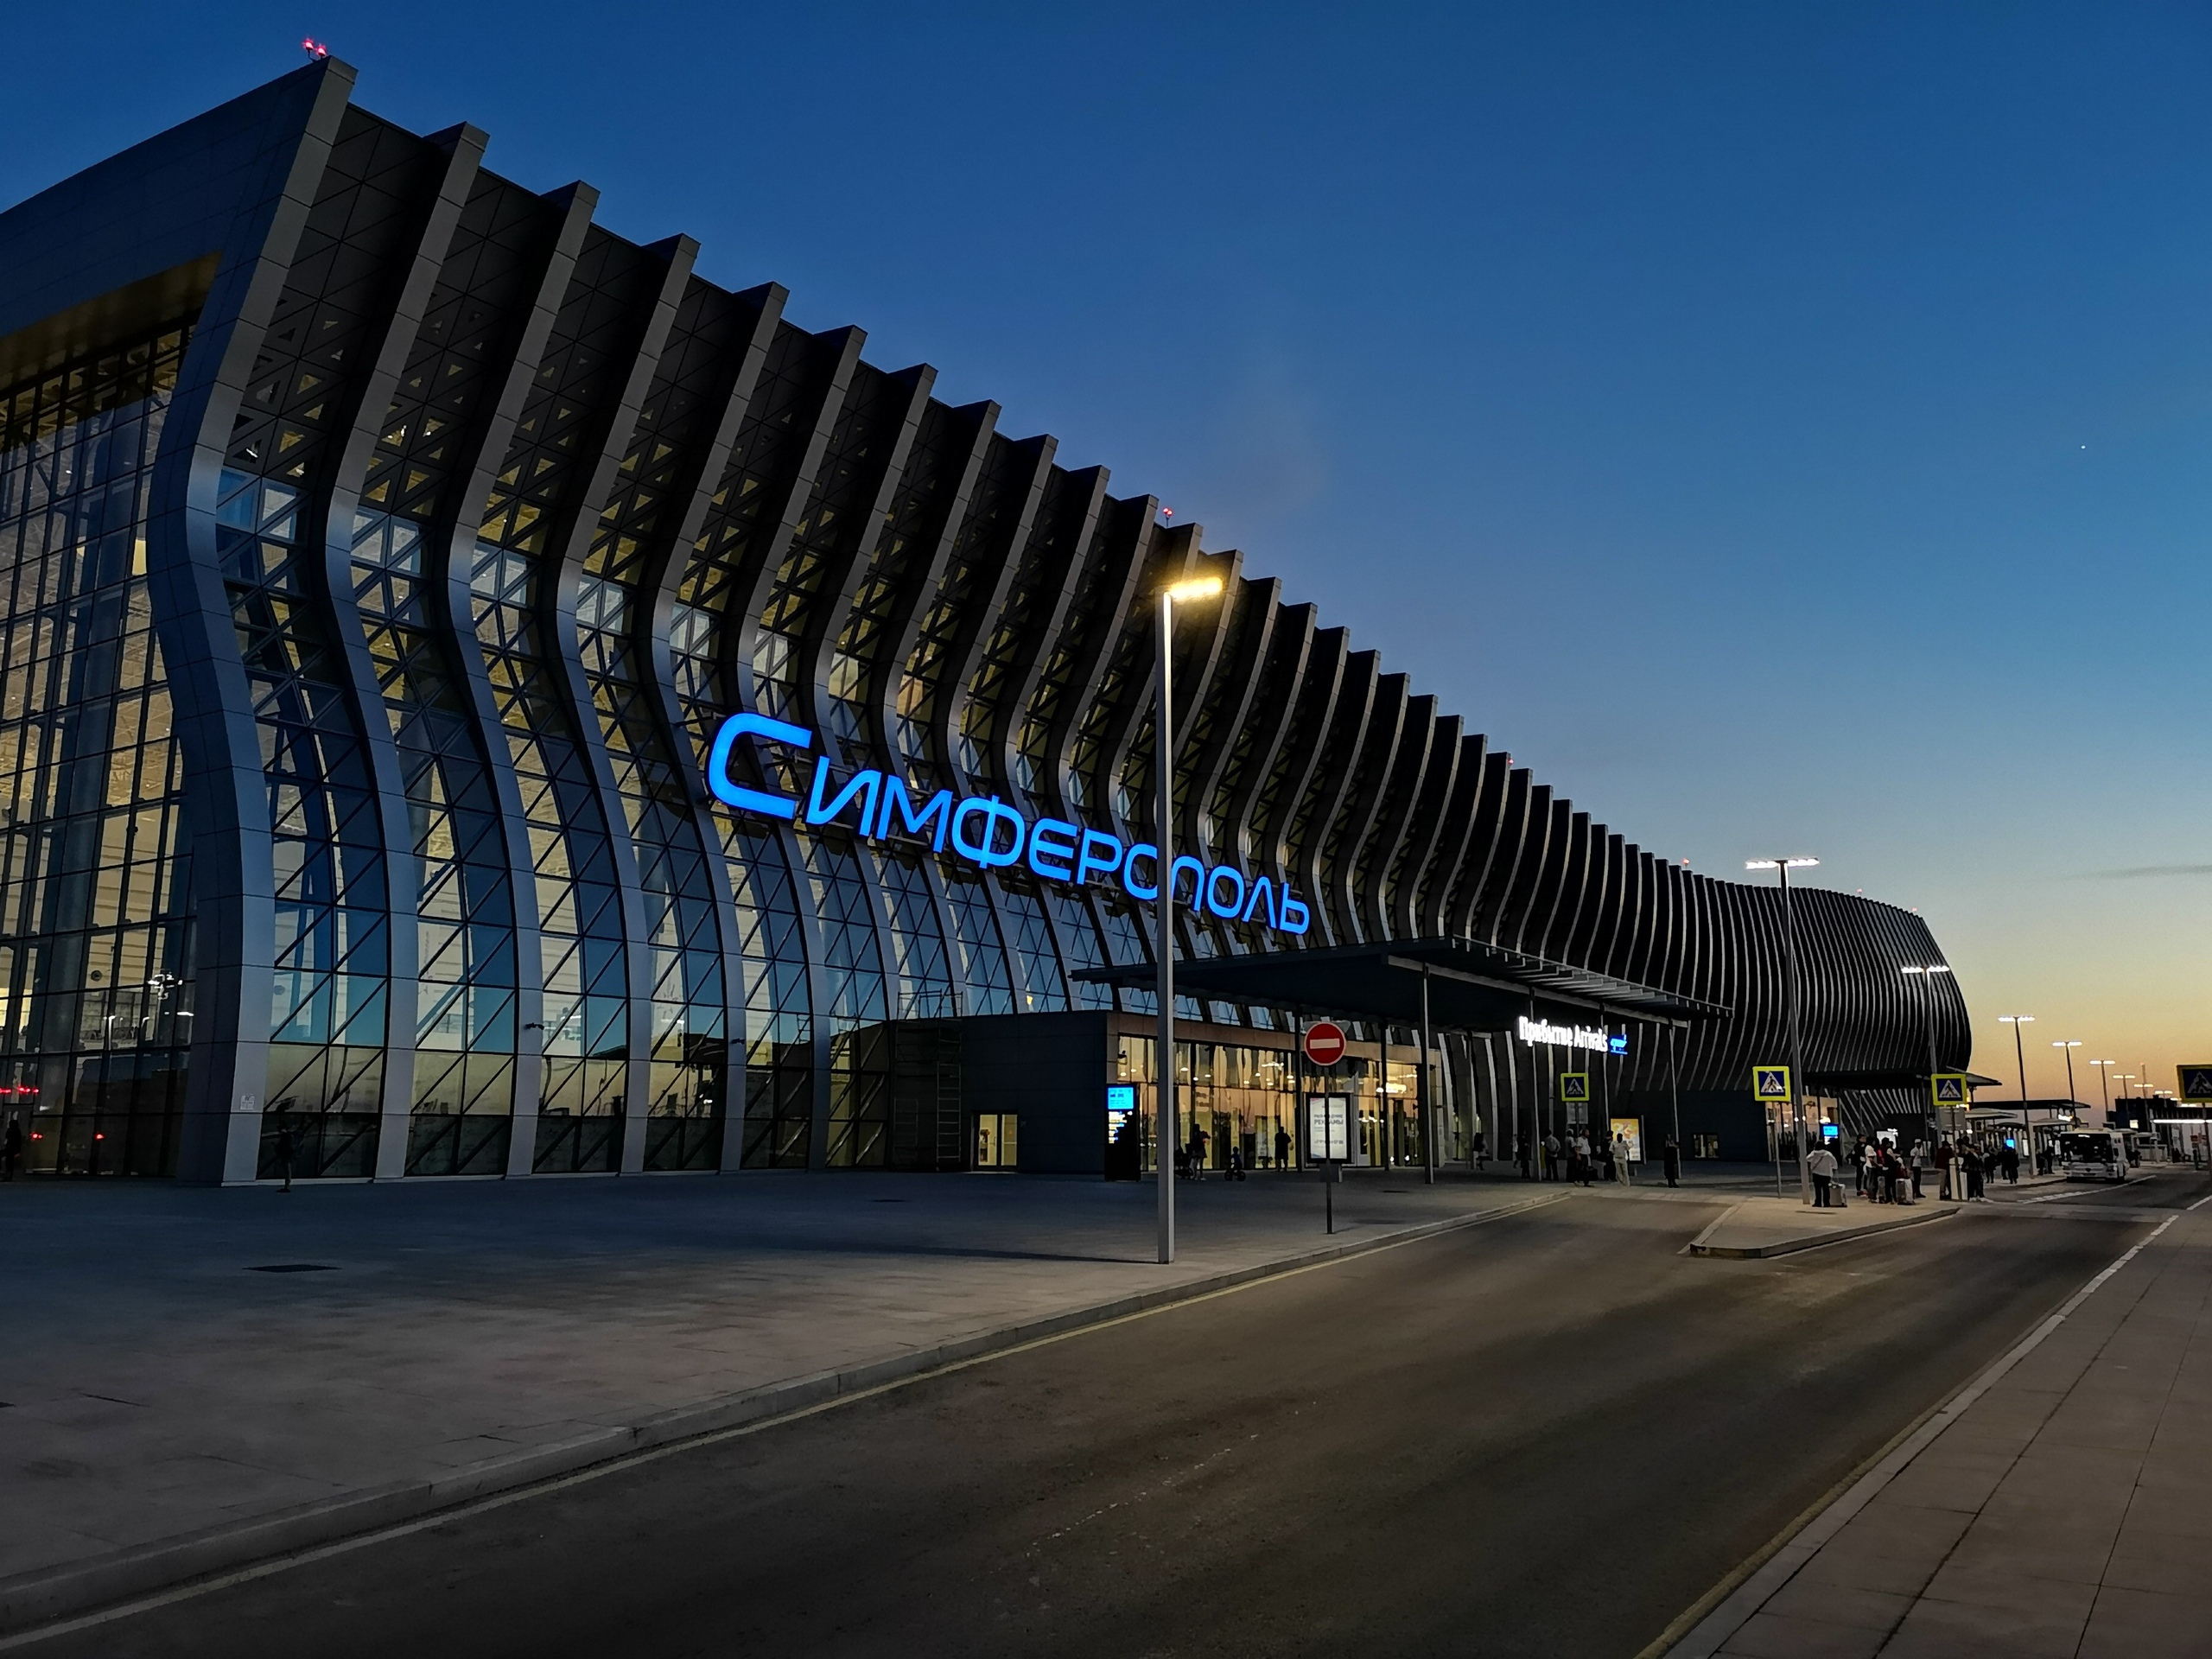 Аэропорту Симферополя торжественно присвоено имя Айвазовского. Состоялся флешмоб с исполнением кочари 